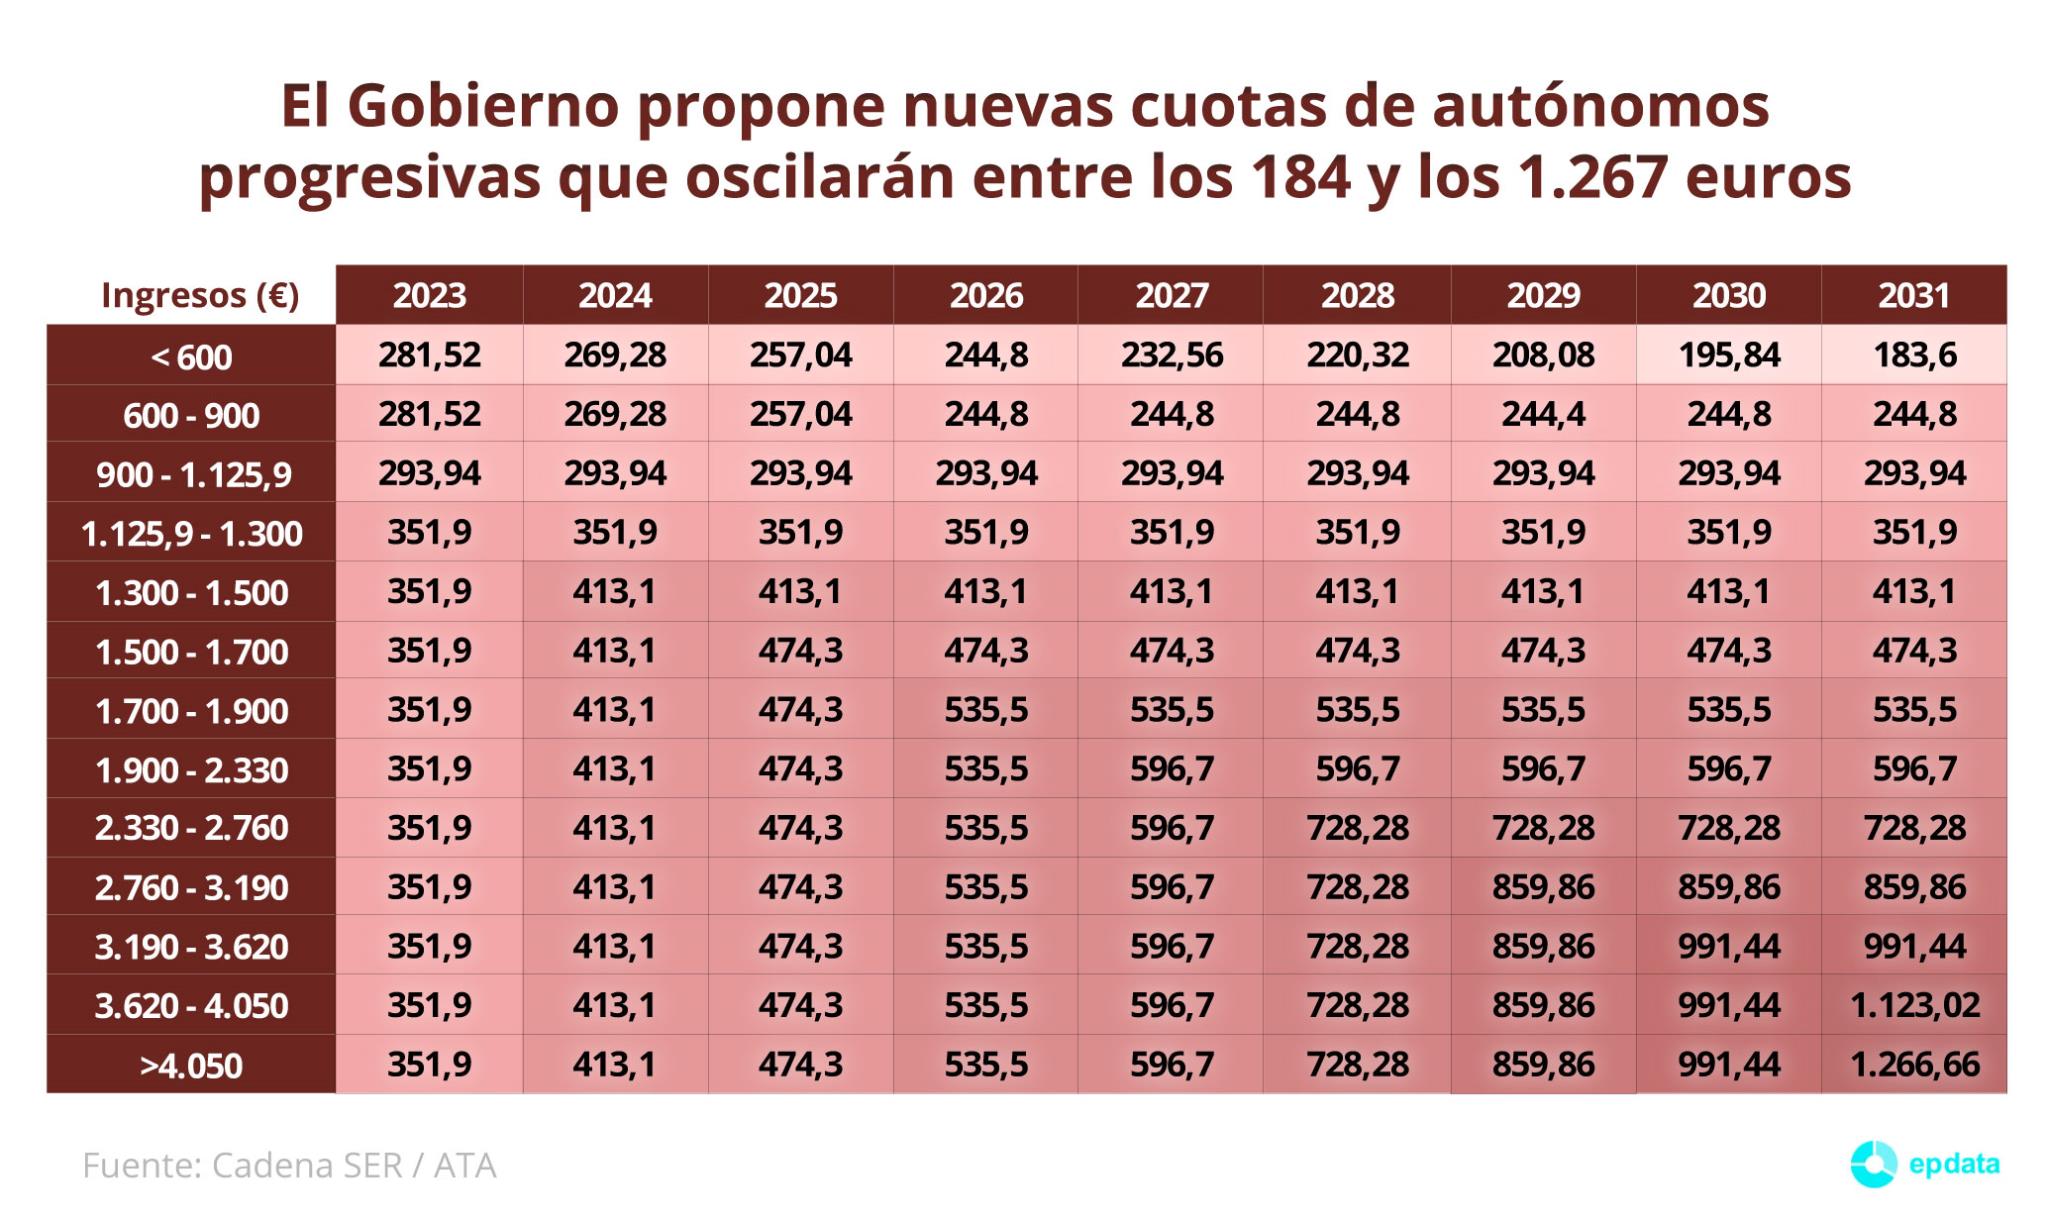 El Gobierno propone nuevas cuotas de autónomos progresivas que oscilarán  entre los 184 y los 1.267 euros